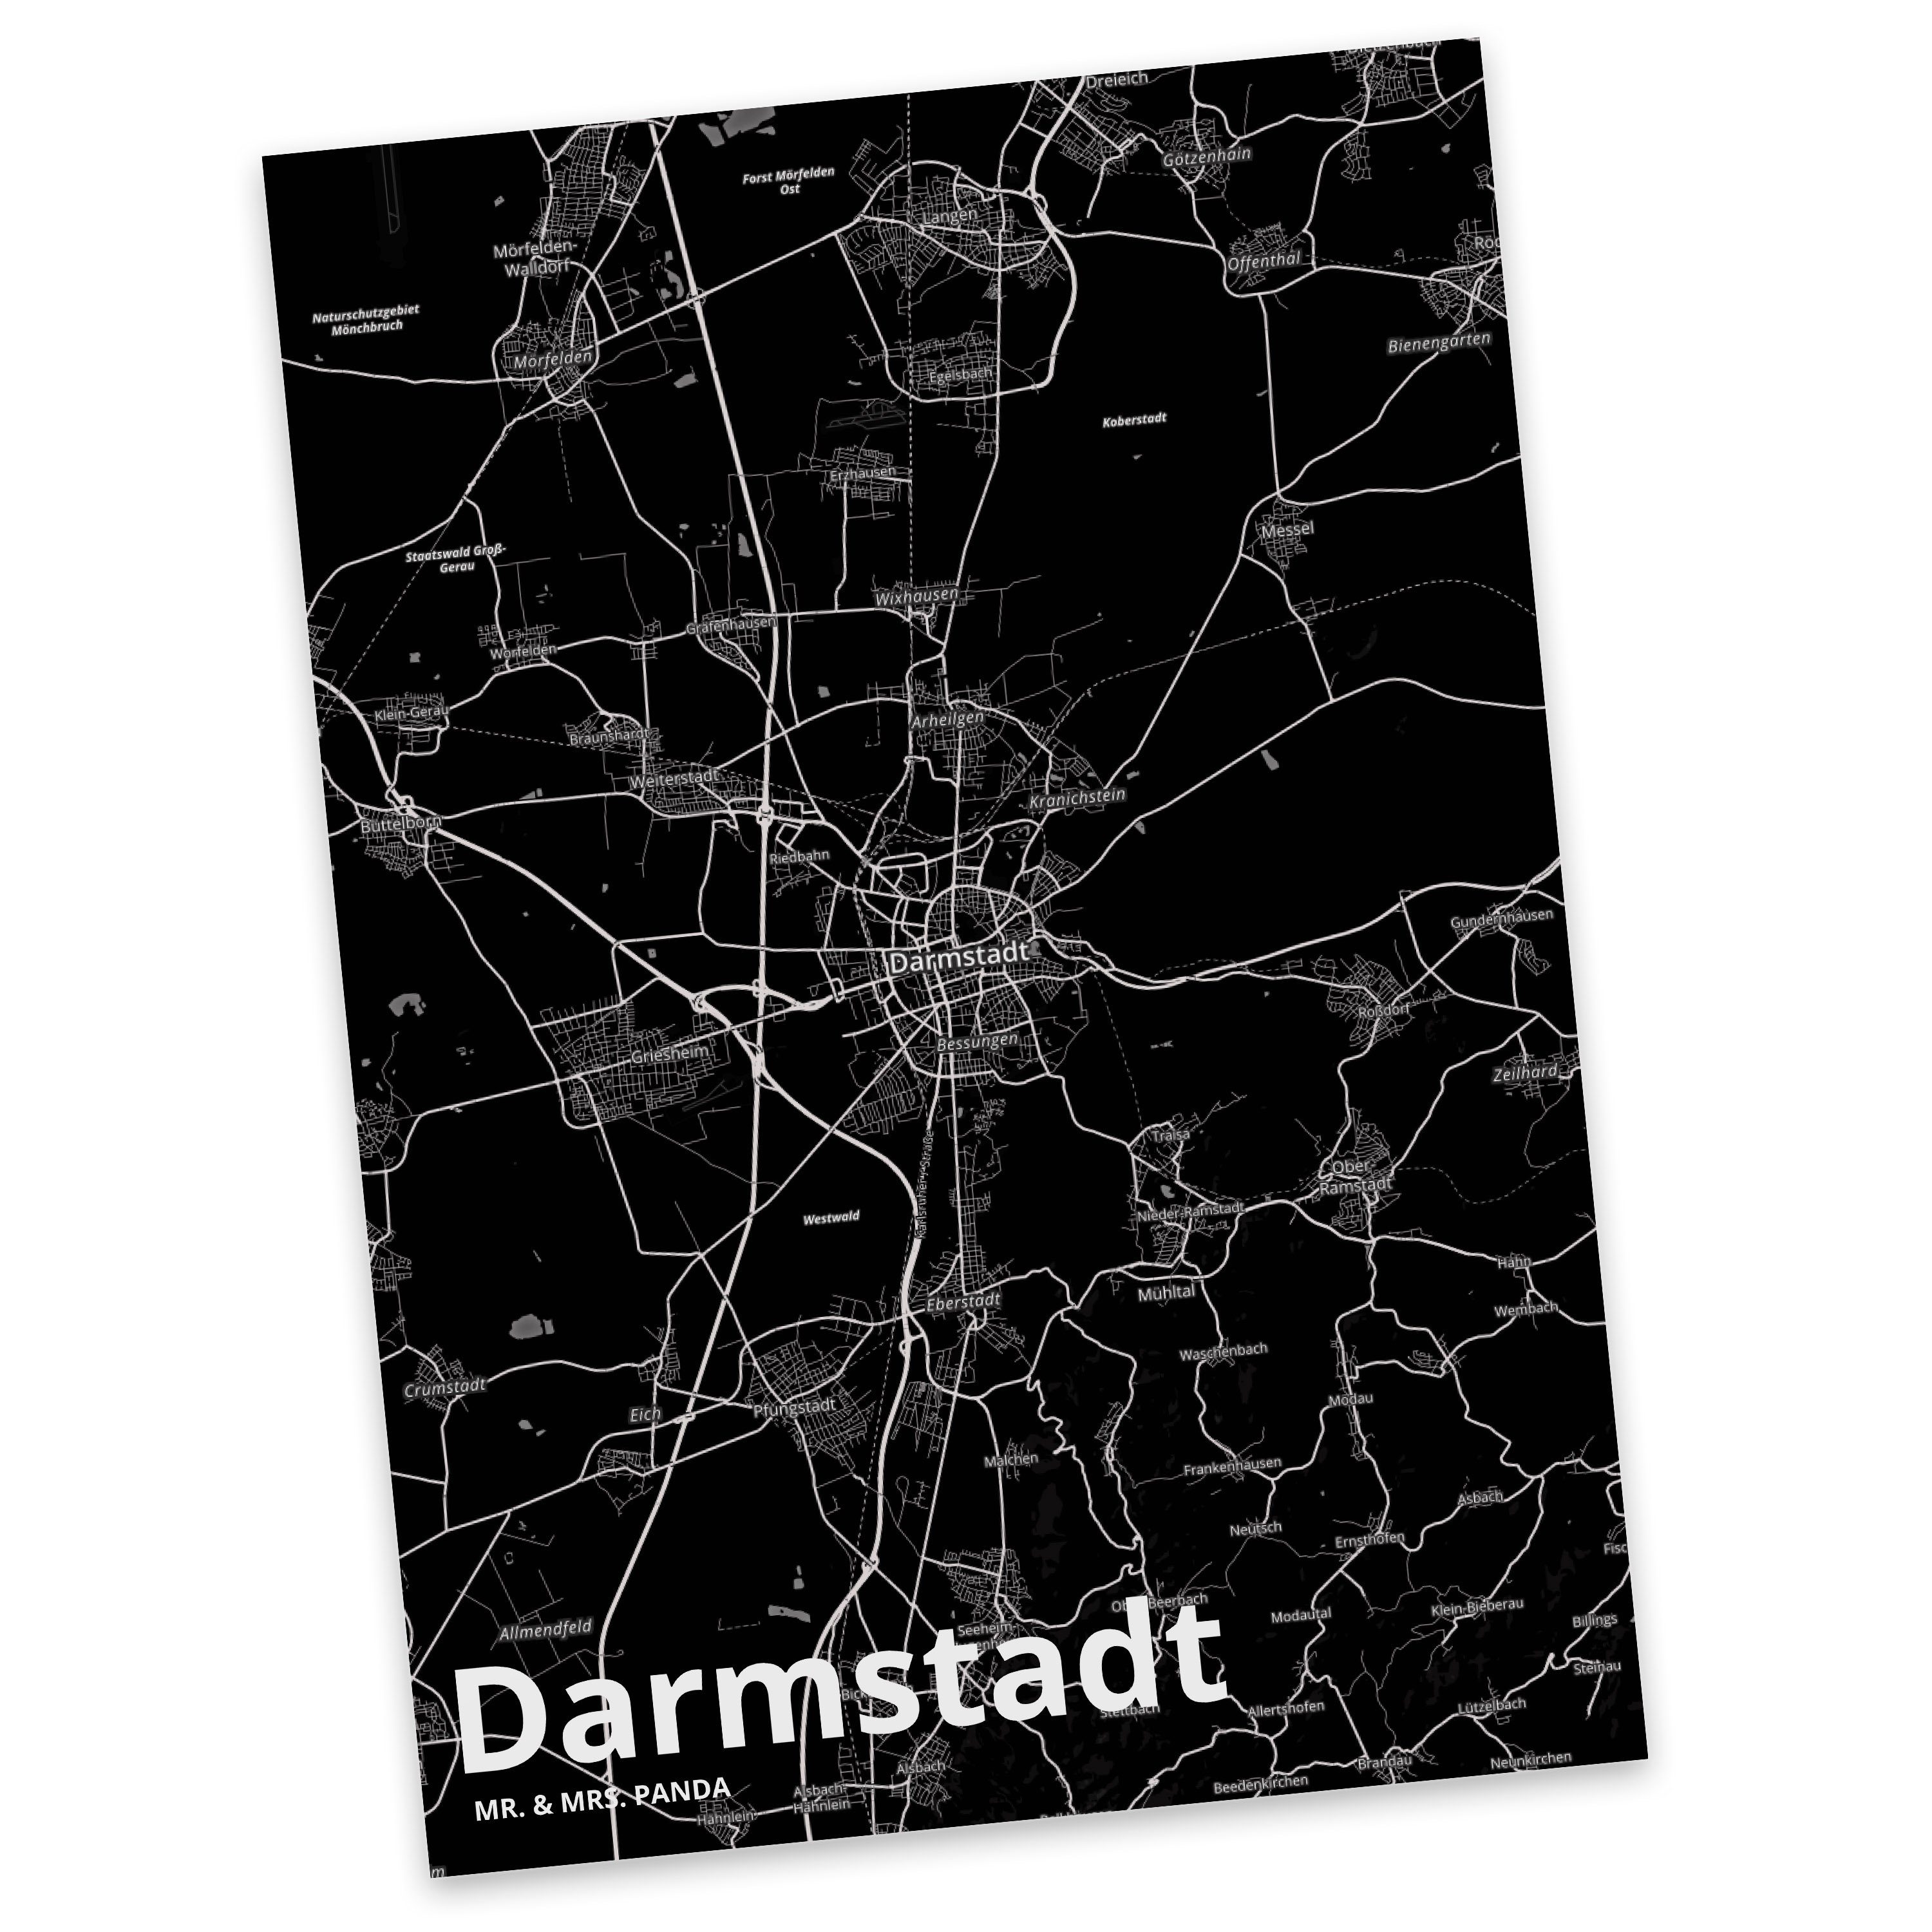 Mr. & Mrs. Panda Postkarte Darmstadt - Geschenk, Karte, Stadt Dorf Karte Landkarte Map Stadtplan